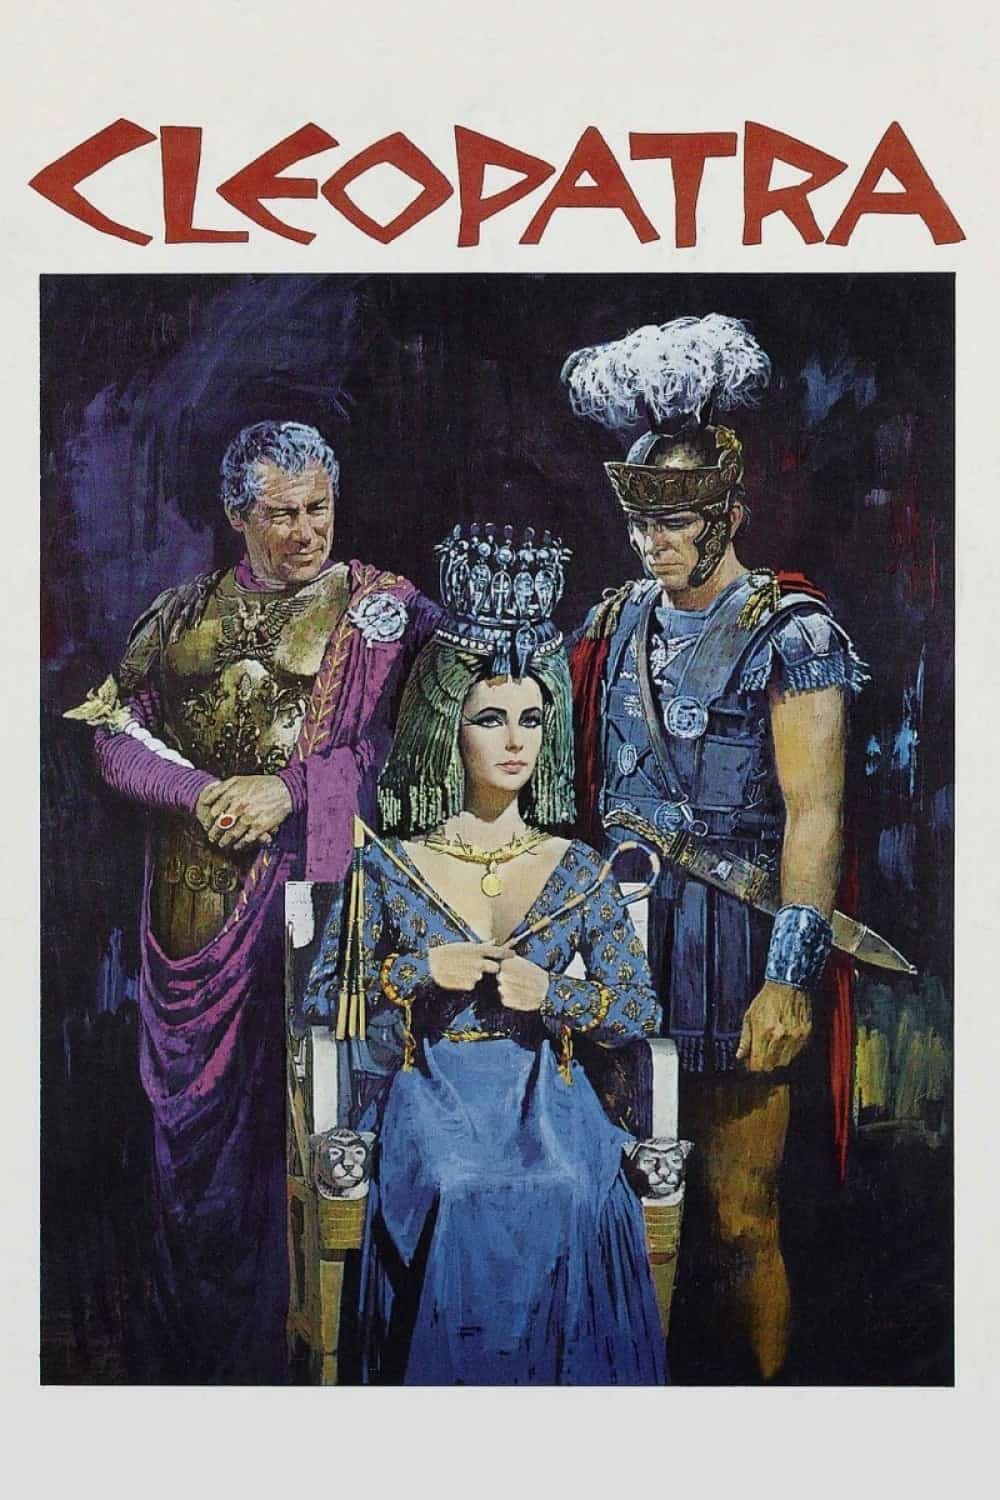 Cleopatra, 1963 